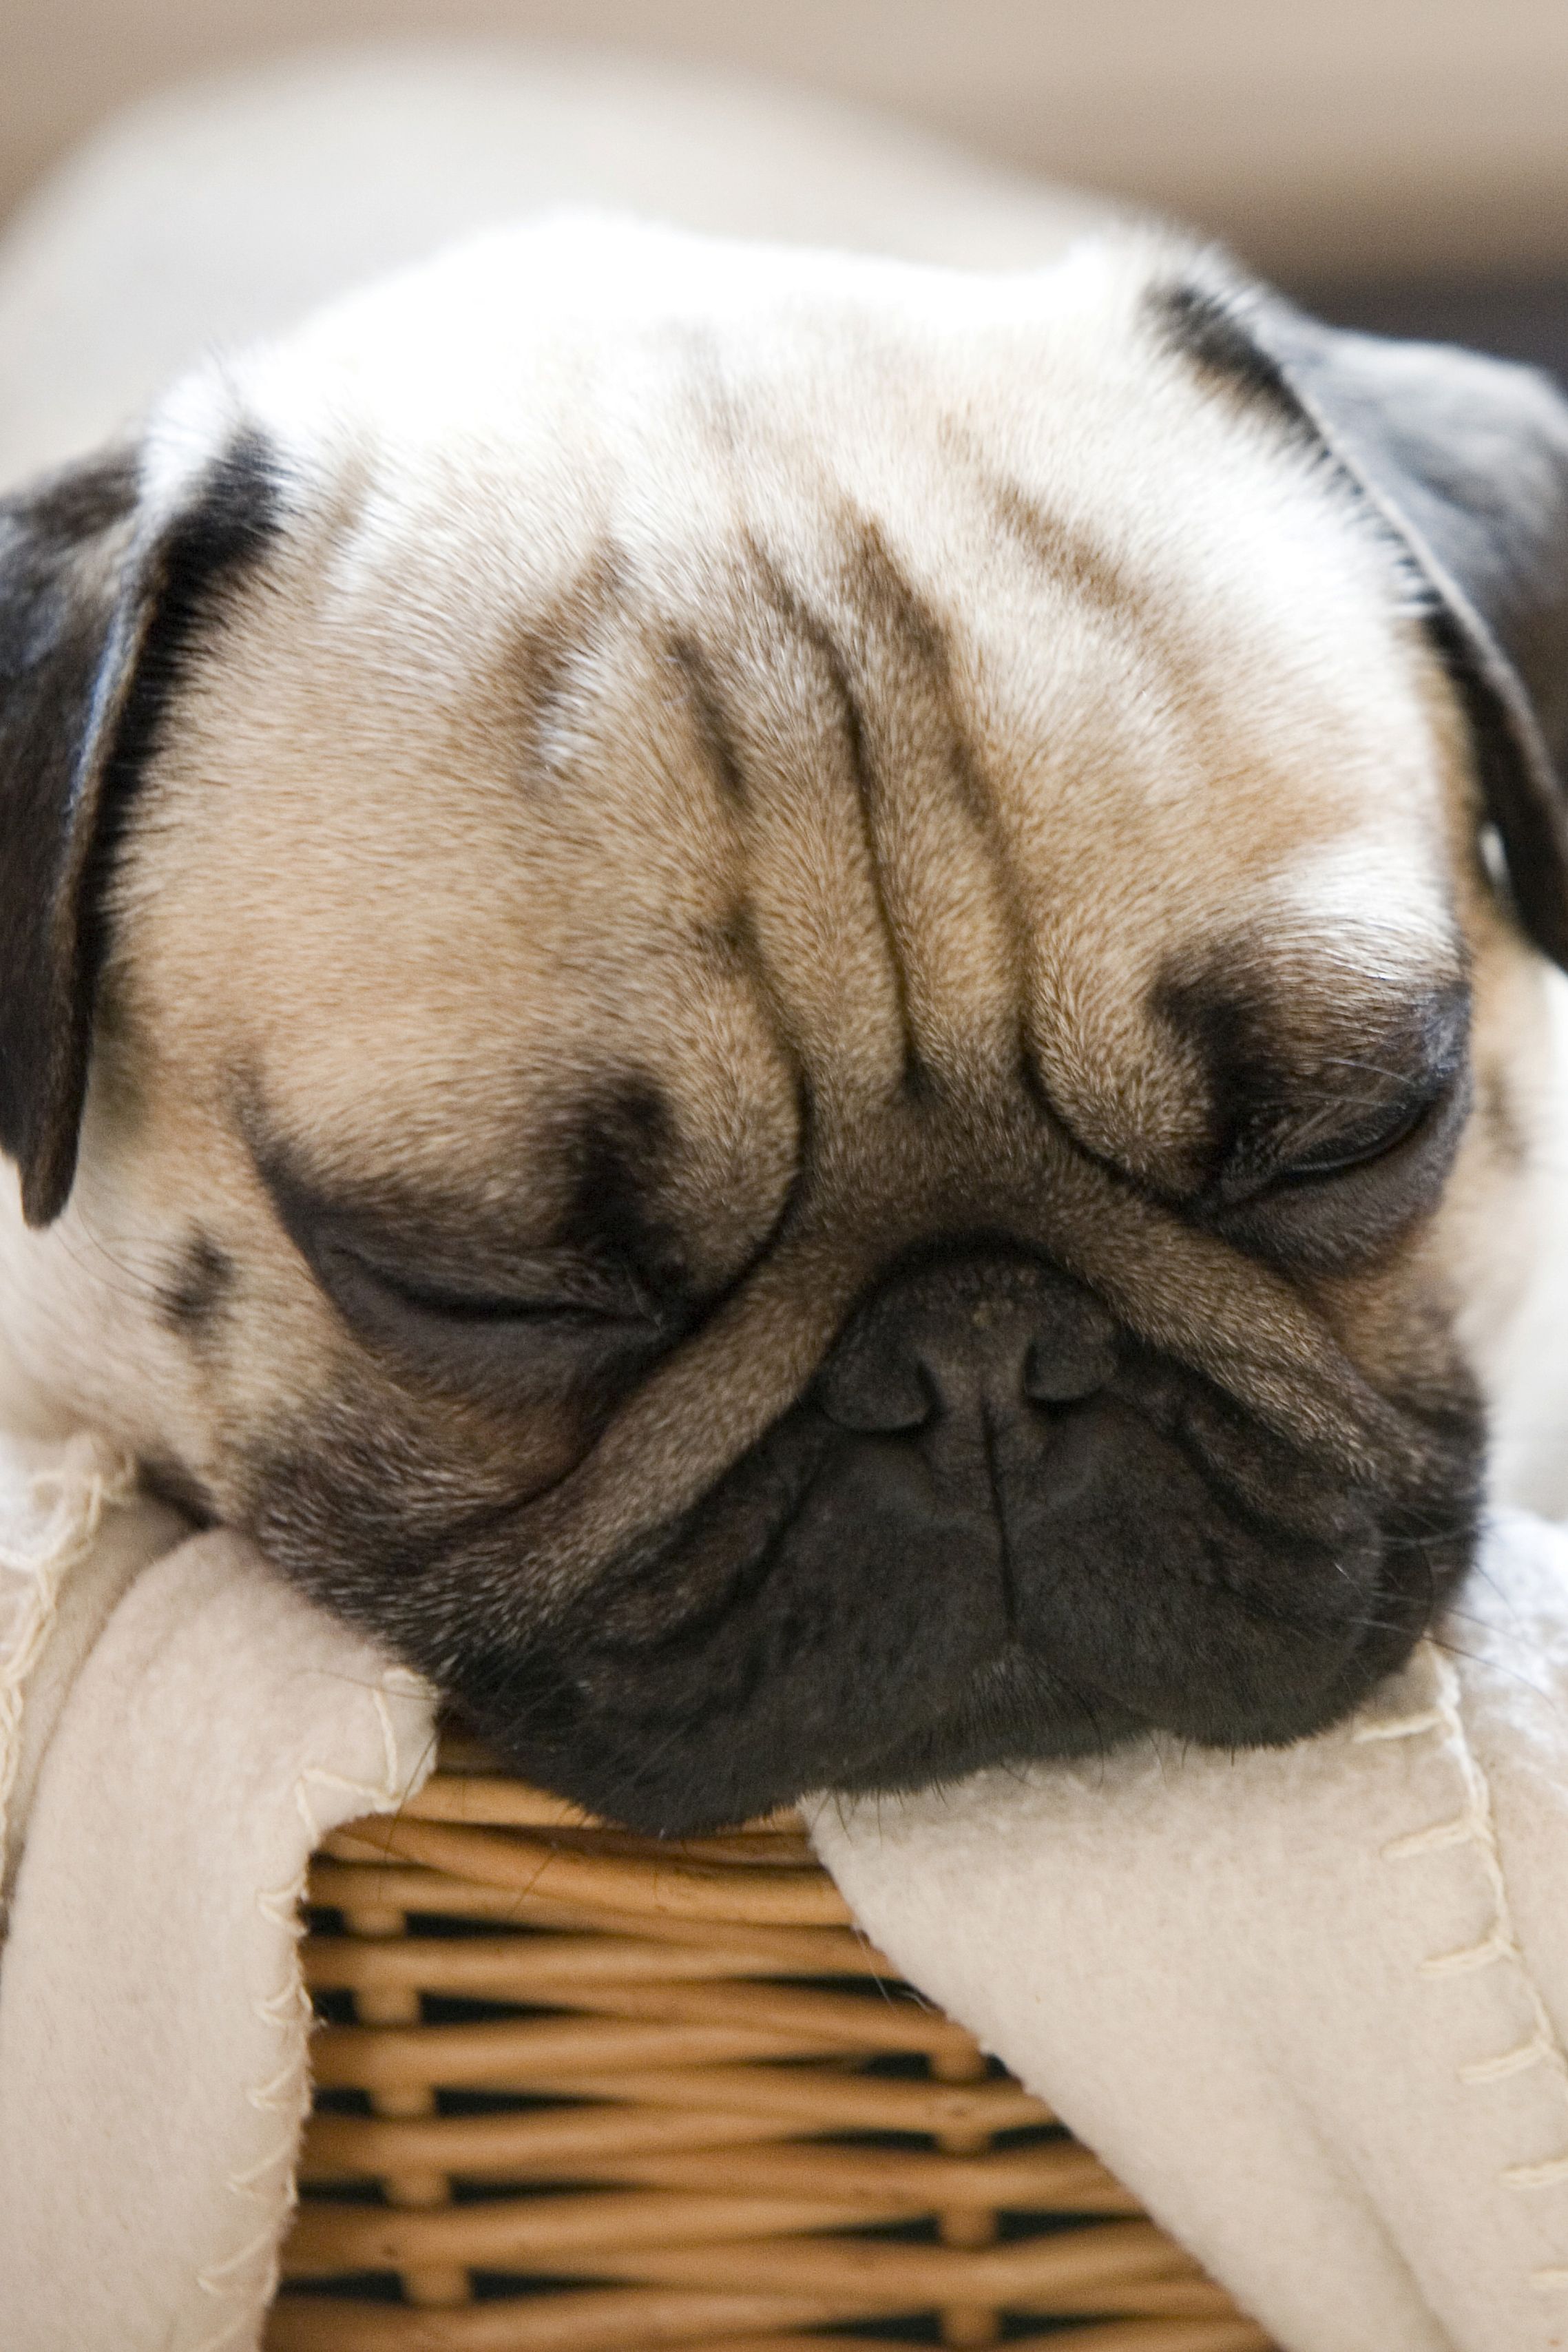 15 Best Lazy Dog Breeds - Laziest Low Energy Dogs